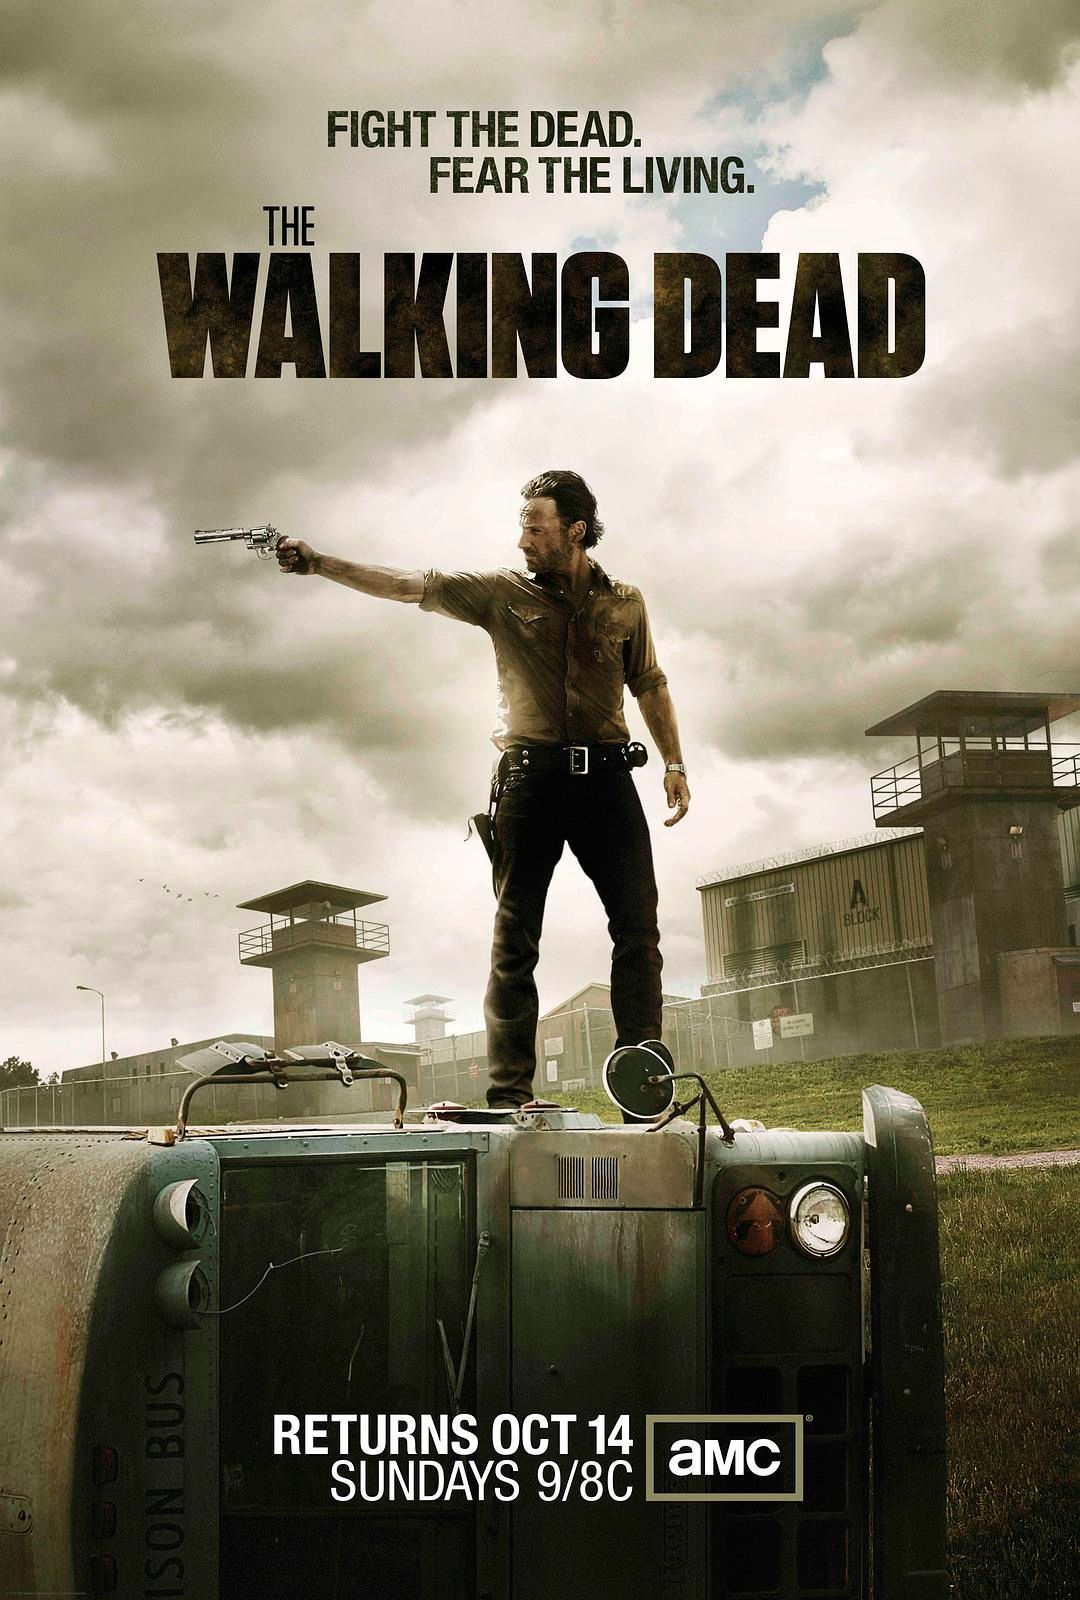 行尸走肉 第二季(The Walking Dead Season 2) - 电视剧图片 | 电视剧剧照 | 高清海报 - VeryCD电驴大全